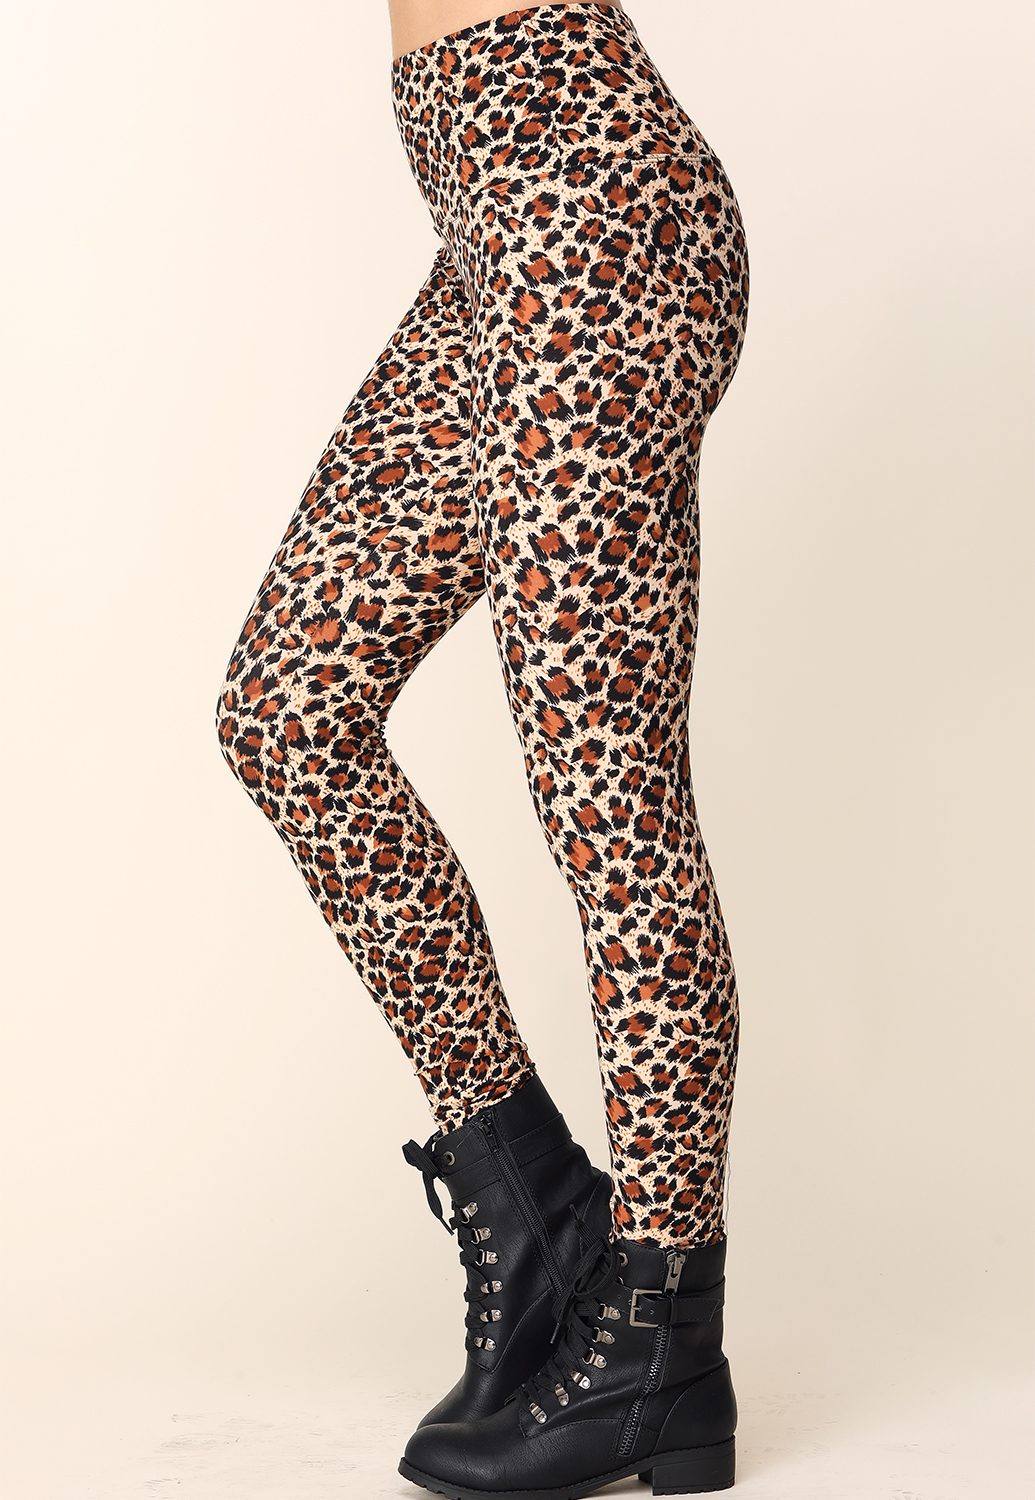 Cheetah Print Leggings | Shop at Papaya Clothing